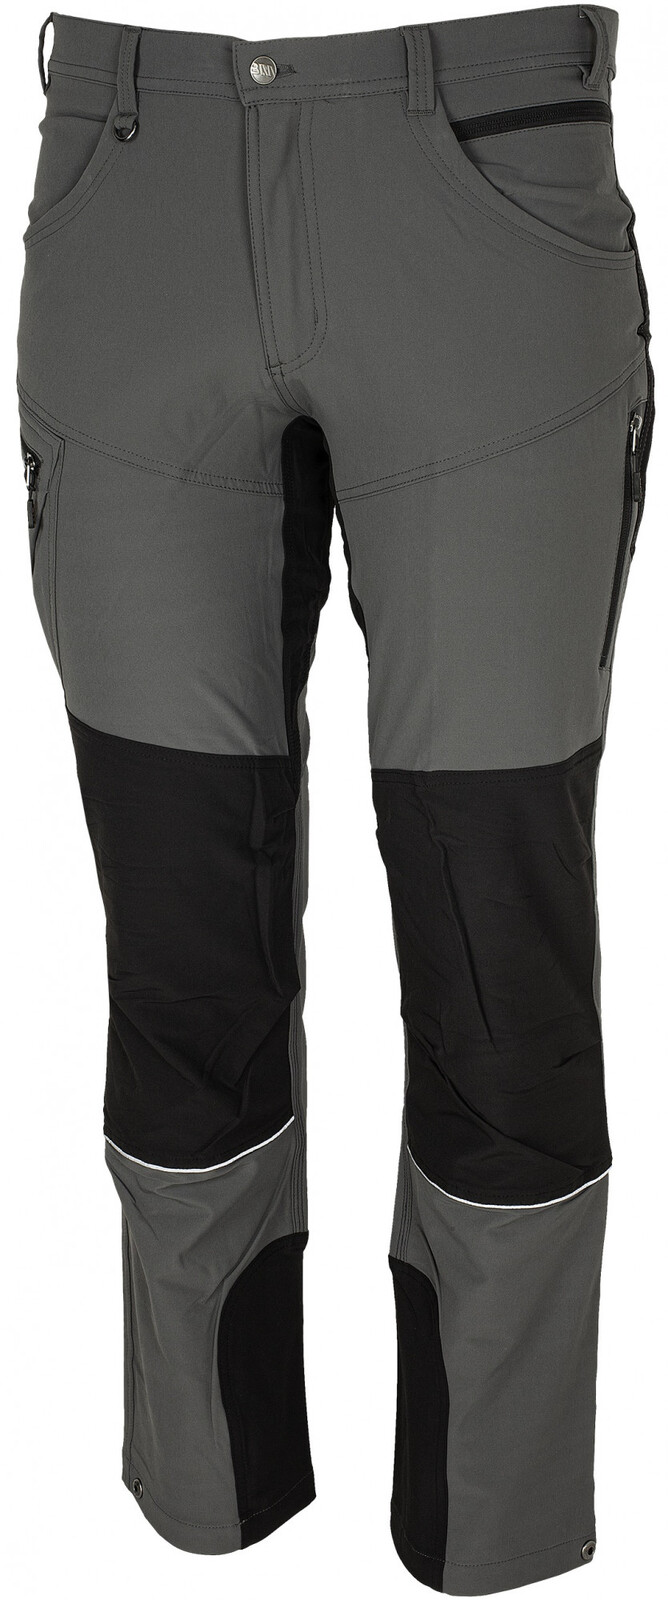 Pánske strečové nohavice Bennon Fobos - veľkosť: 58, farba: sivá/čierna